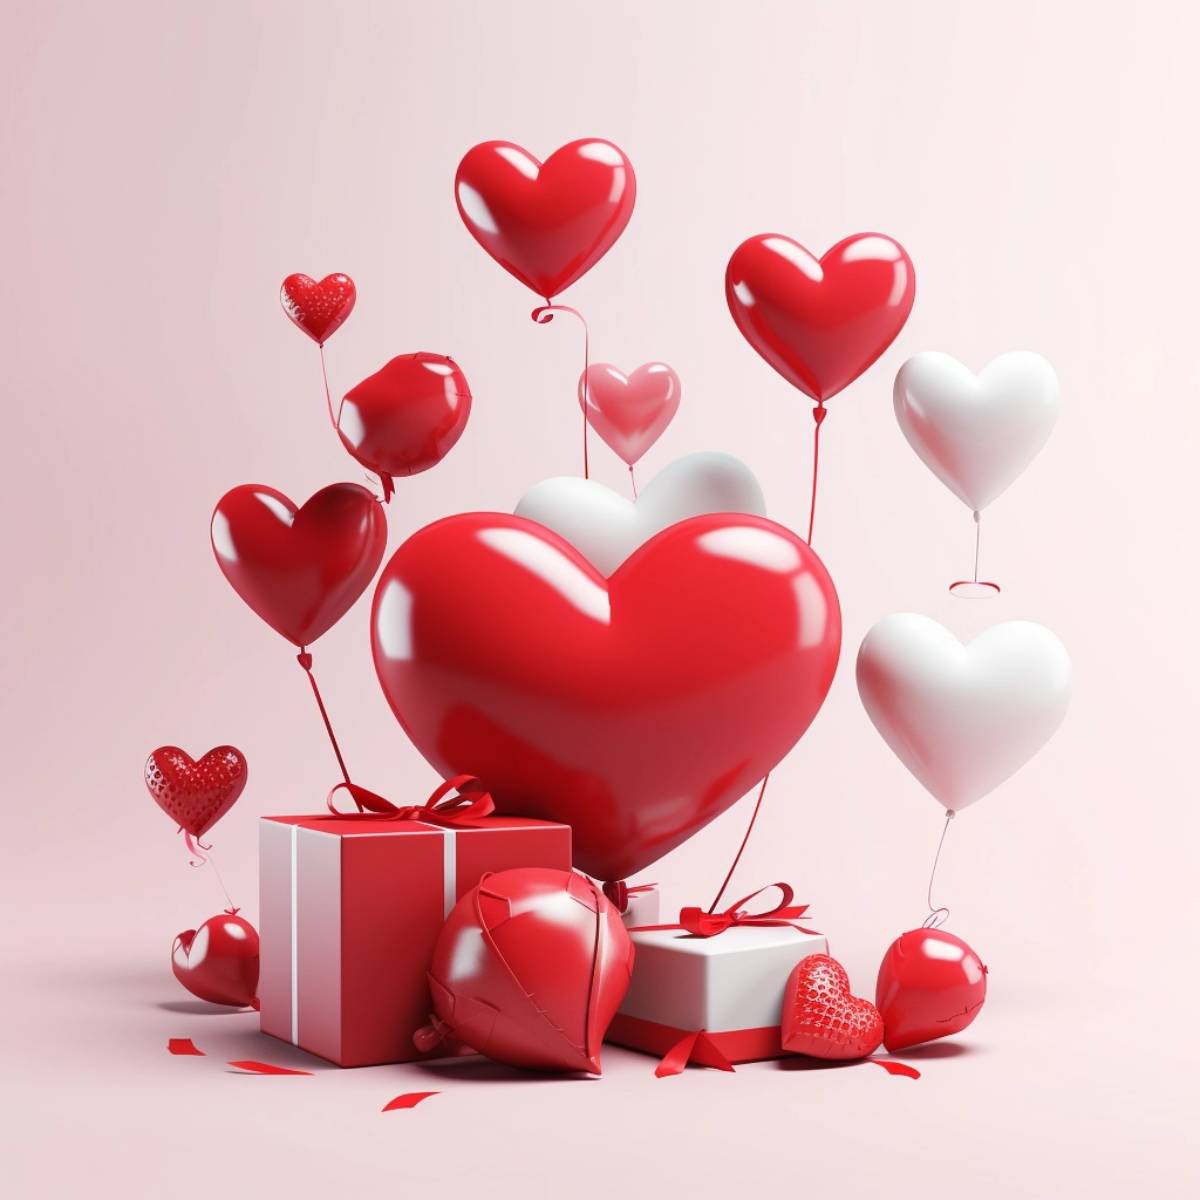 Cuatro ideas de regalos originales para San Valentín